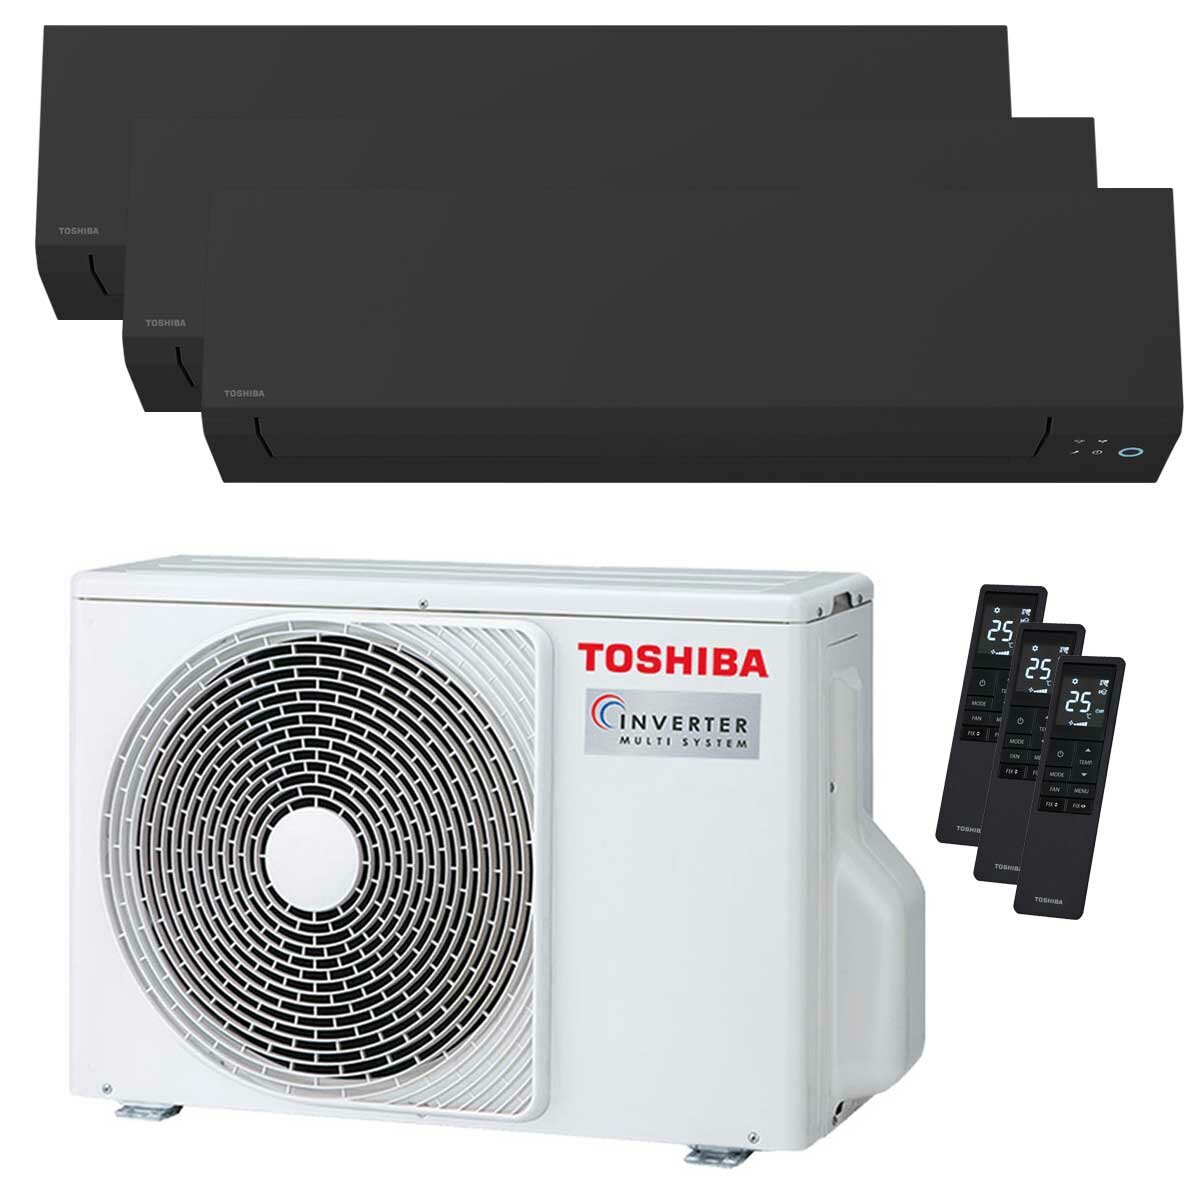 Toshiba SHORAI Edge Black climatiseur trial split 5000+7000+16000 BTU inverseur A+++ unité extérieure wifi 5,2 kW 